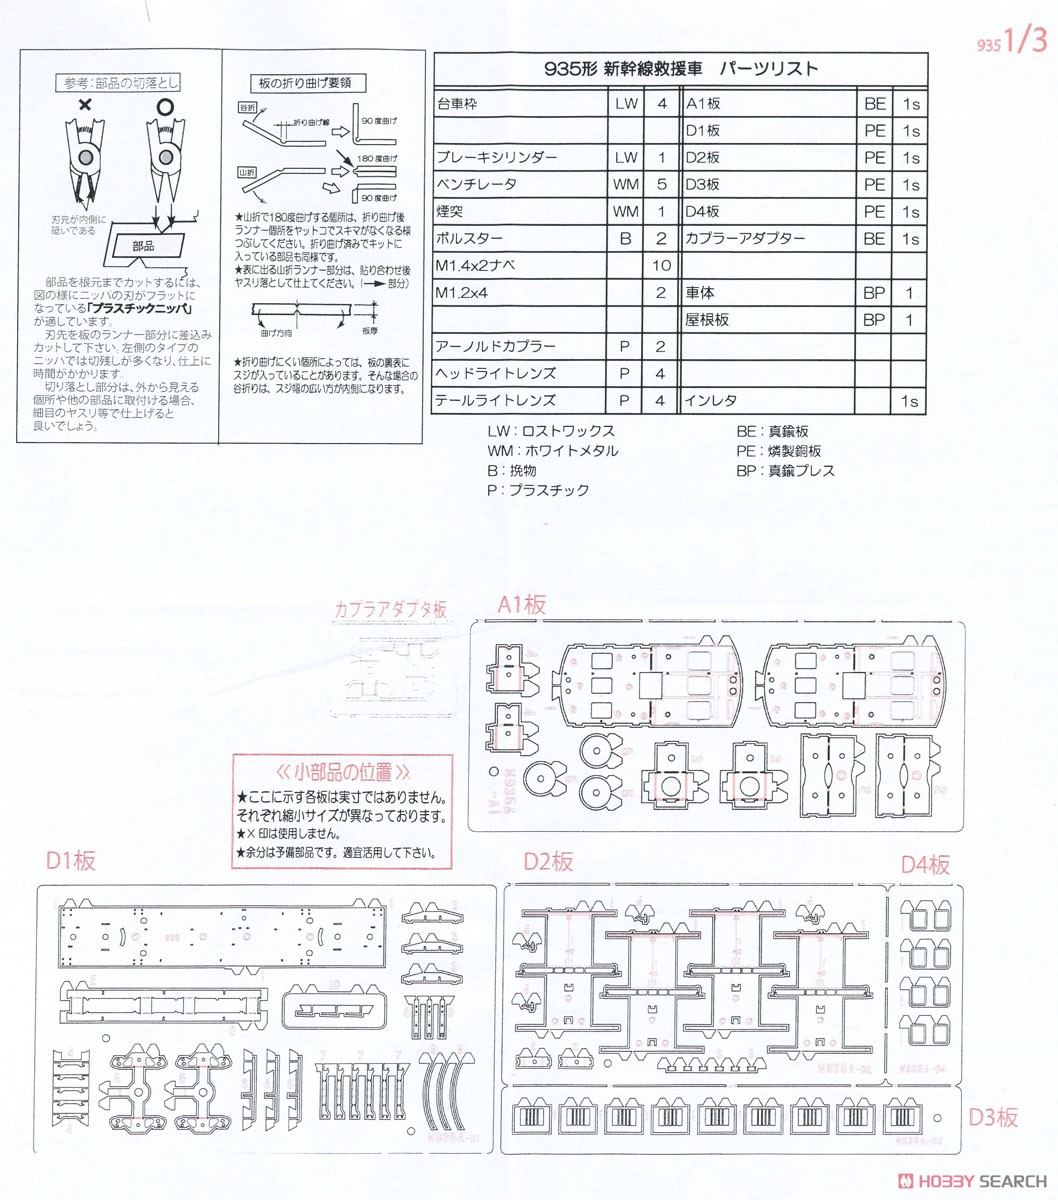 国鉄 935形 新幹線救援車 組立キット (組み立てキット) (鉄道模型) 設計図1